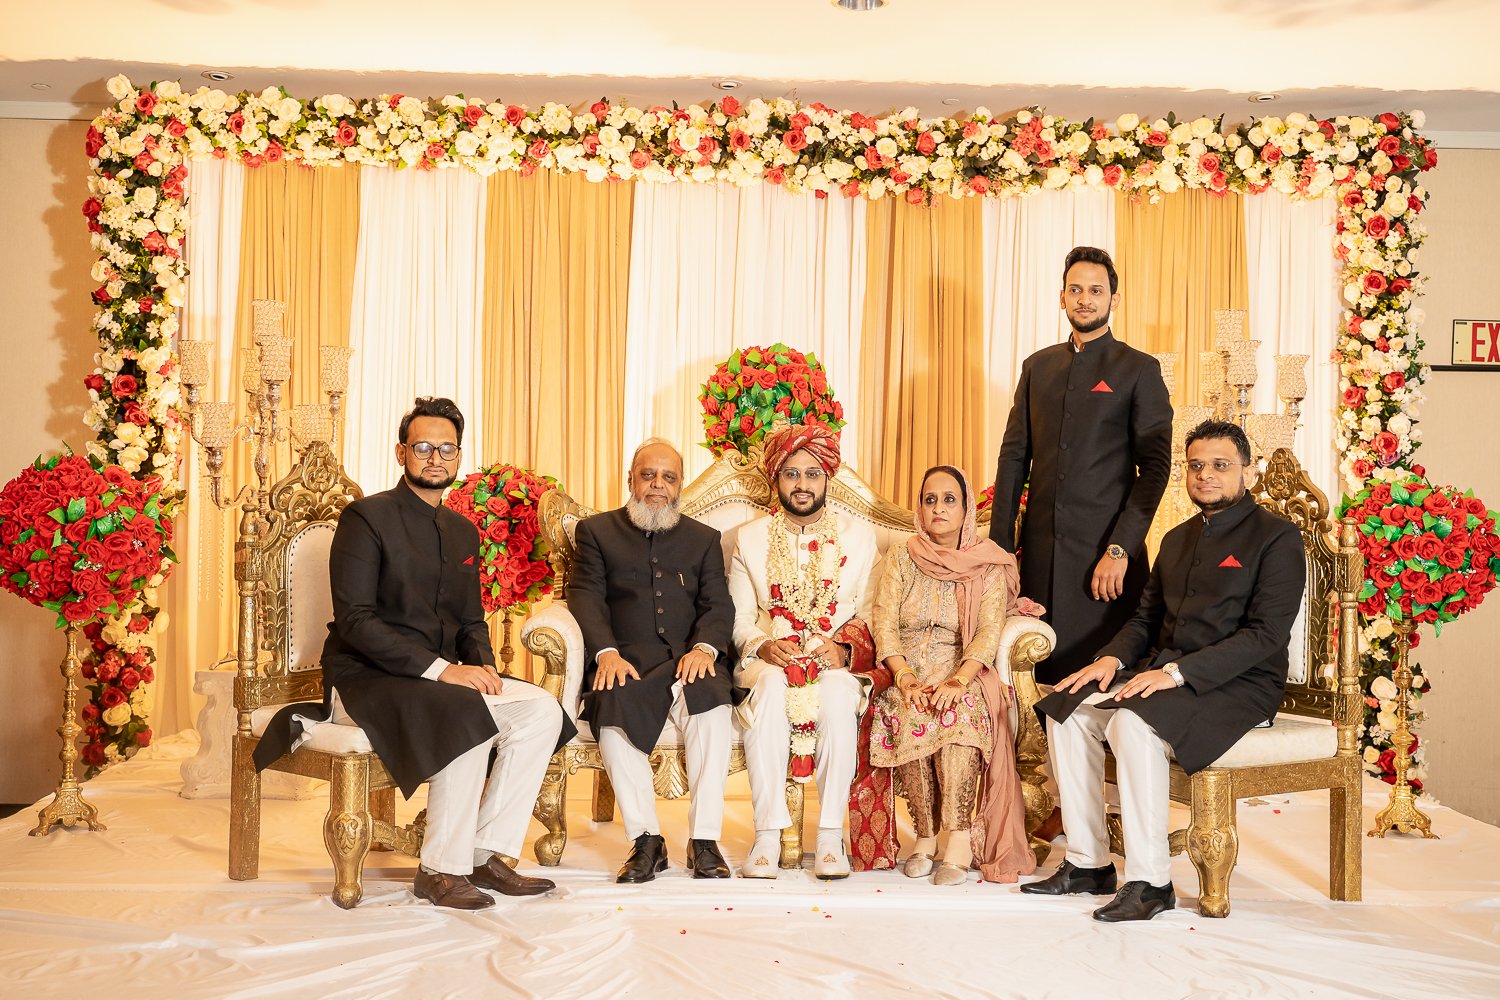 Pakistani-Edison-NJ-wedding-Mirchi-33.jpg